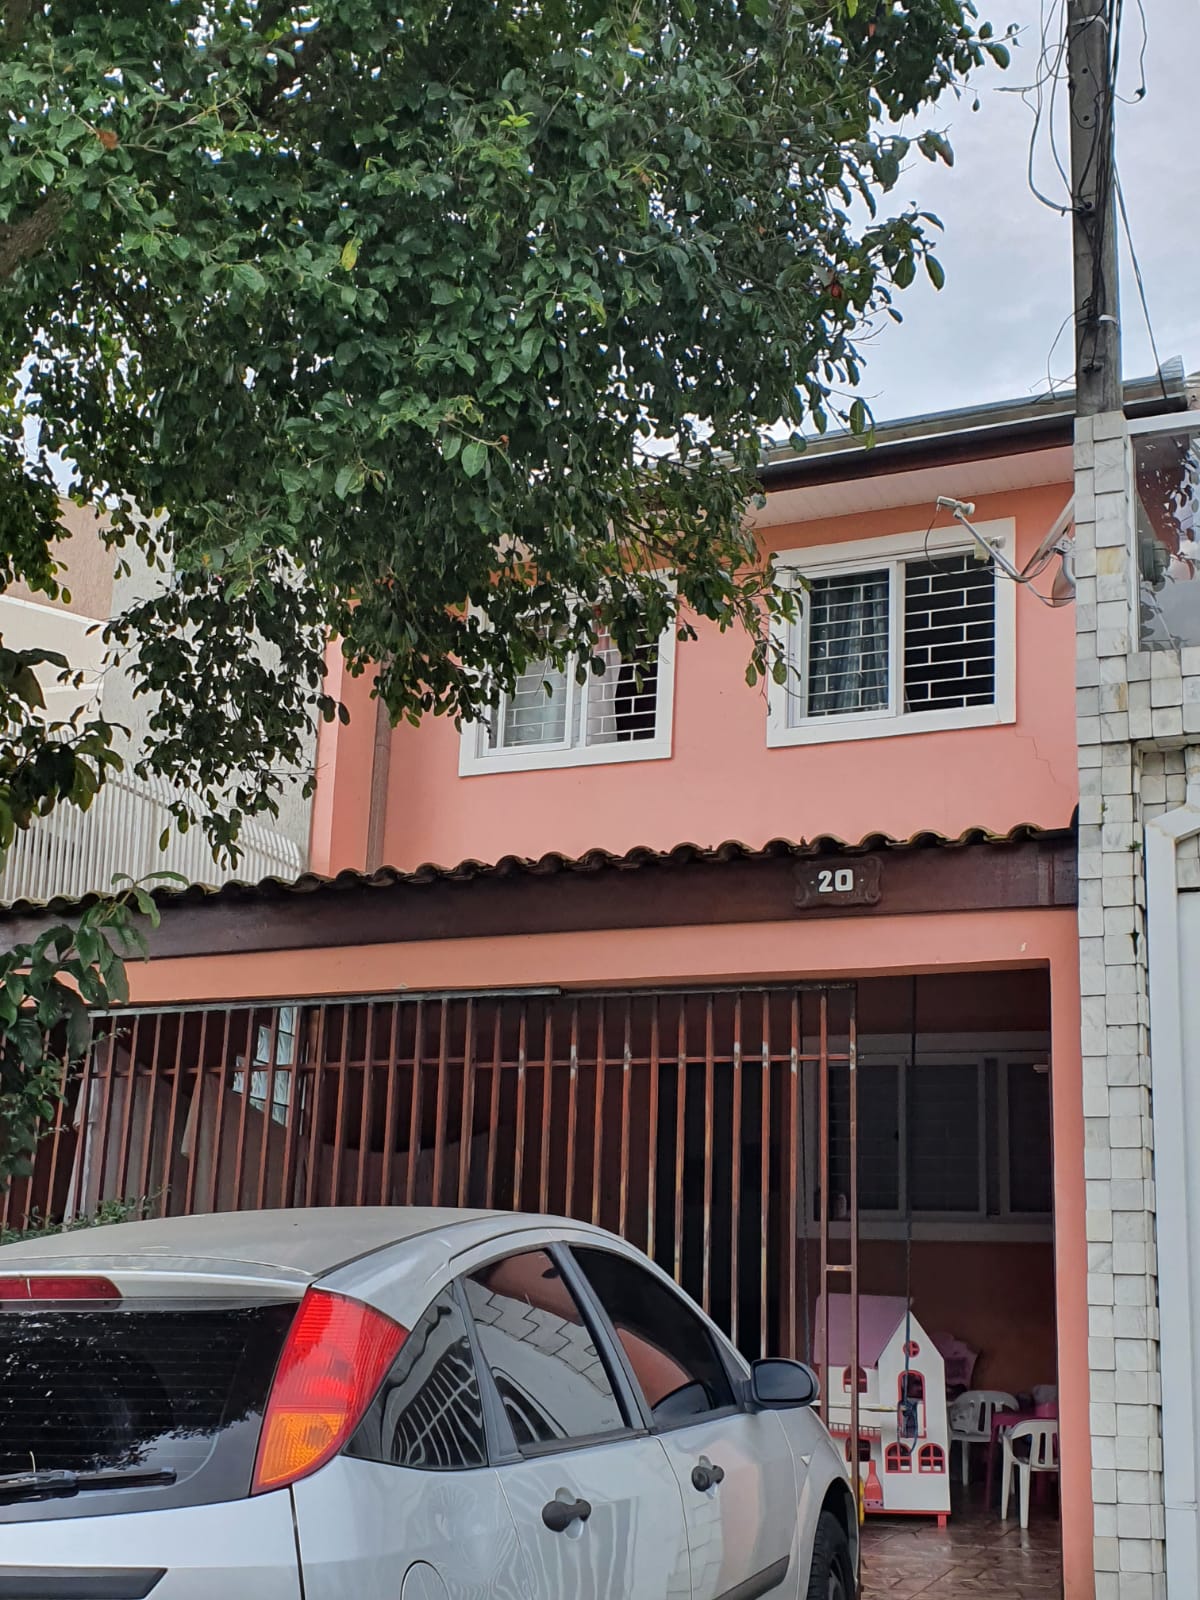 Sobrado 3 dormitórios no bairro Boqueirão.